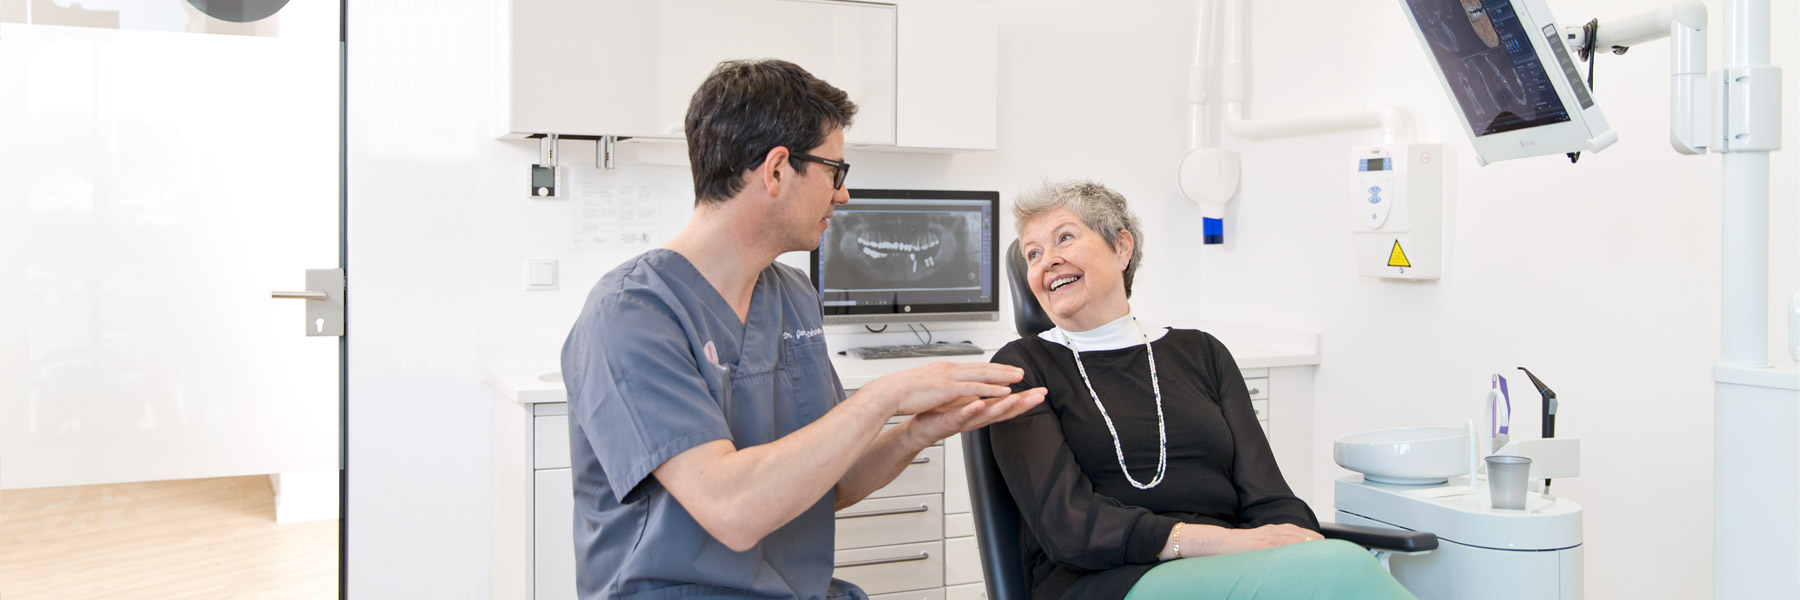 Zahnarzt umkreis Regensburg Dr. Lehner spricht mit einer Patientin am Stuhl